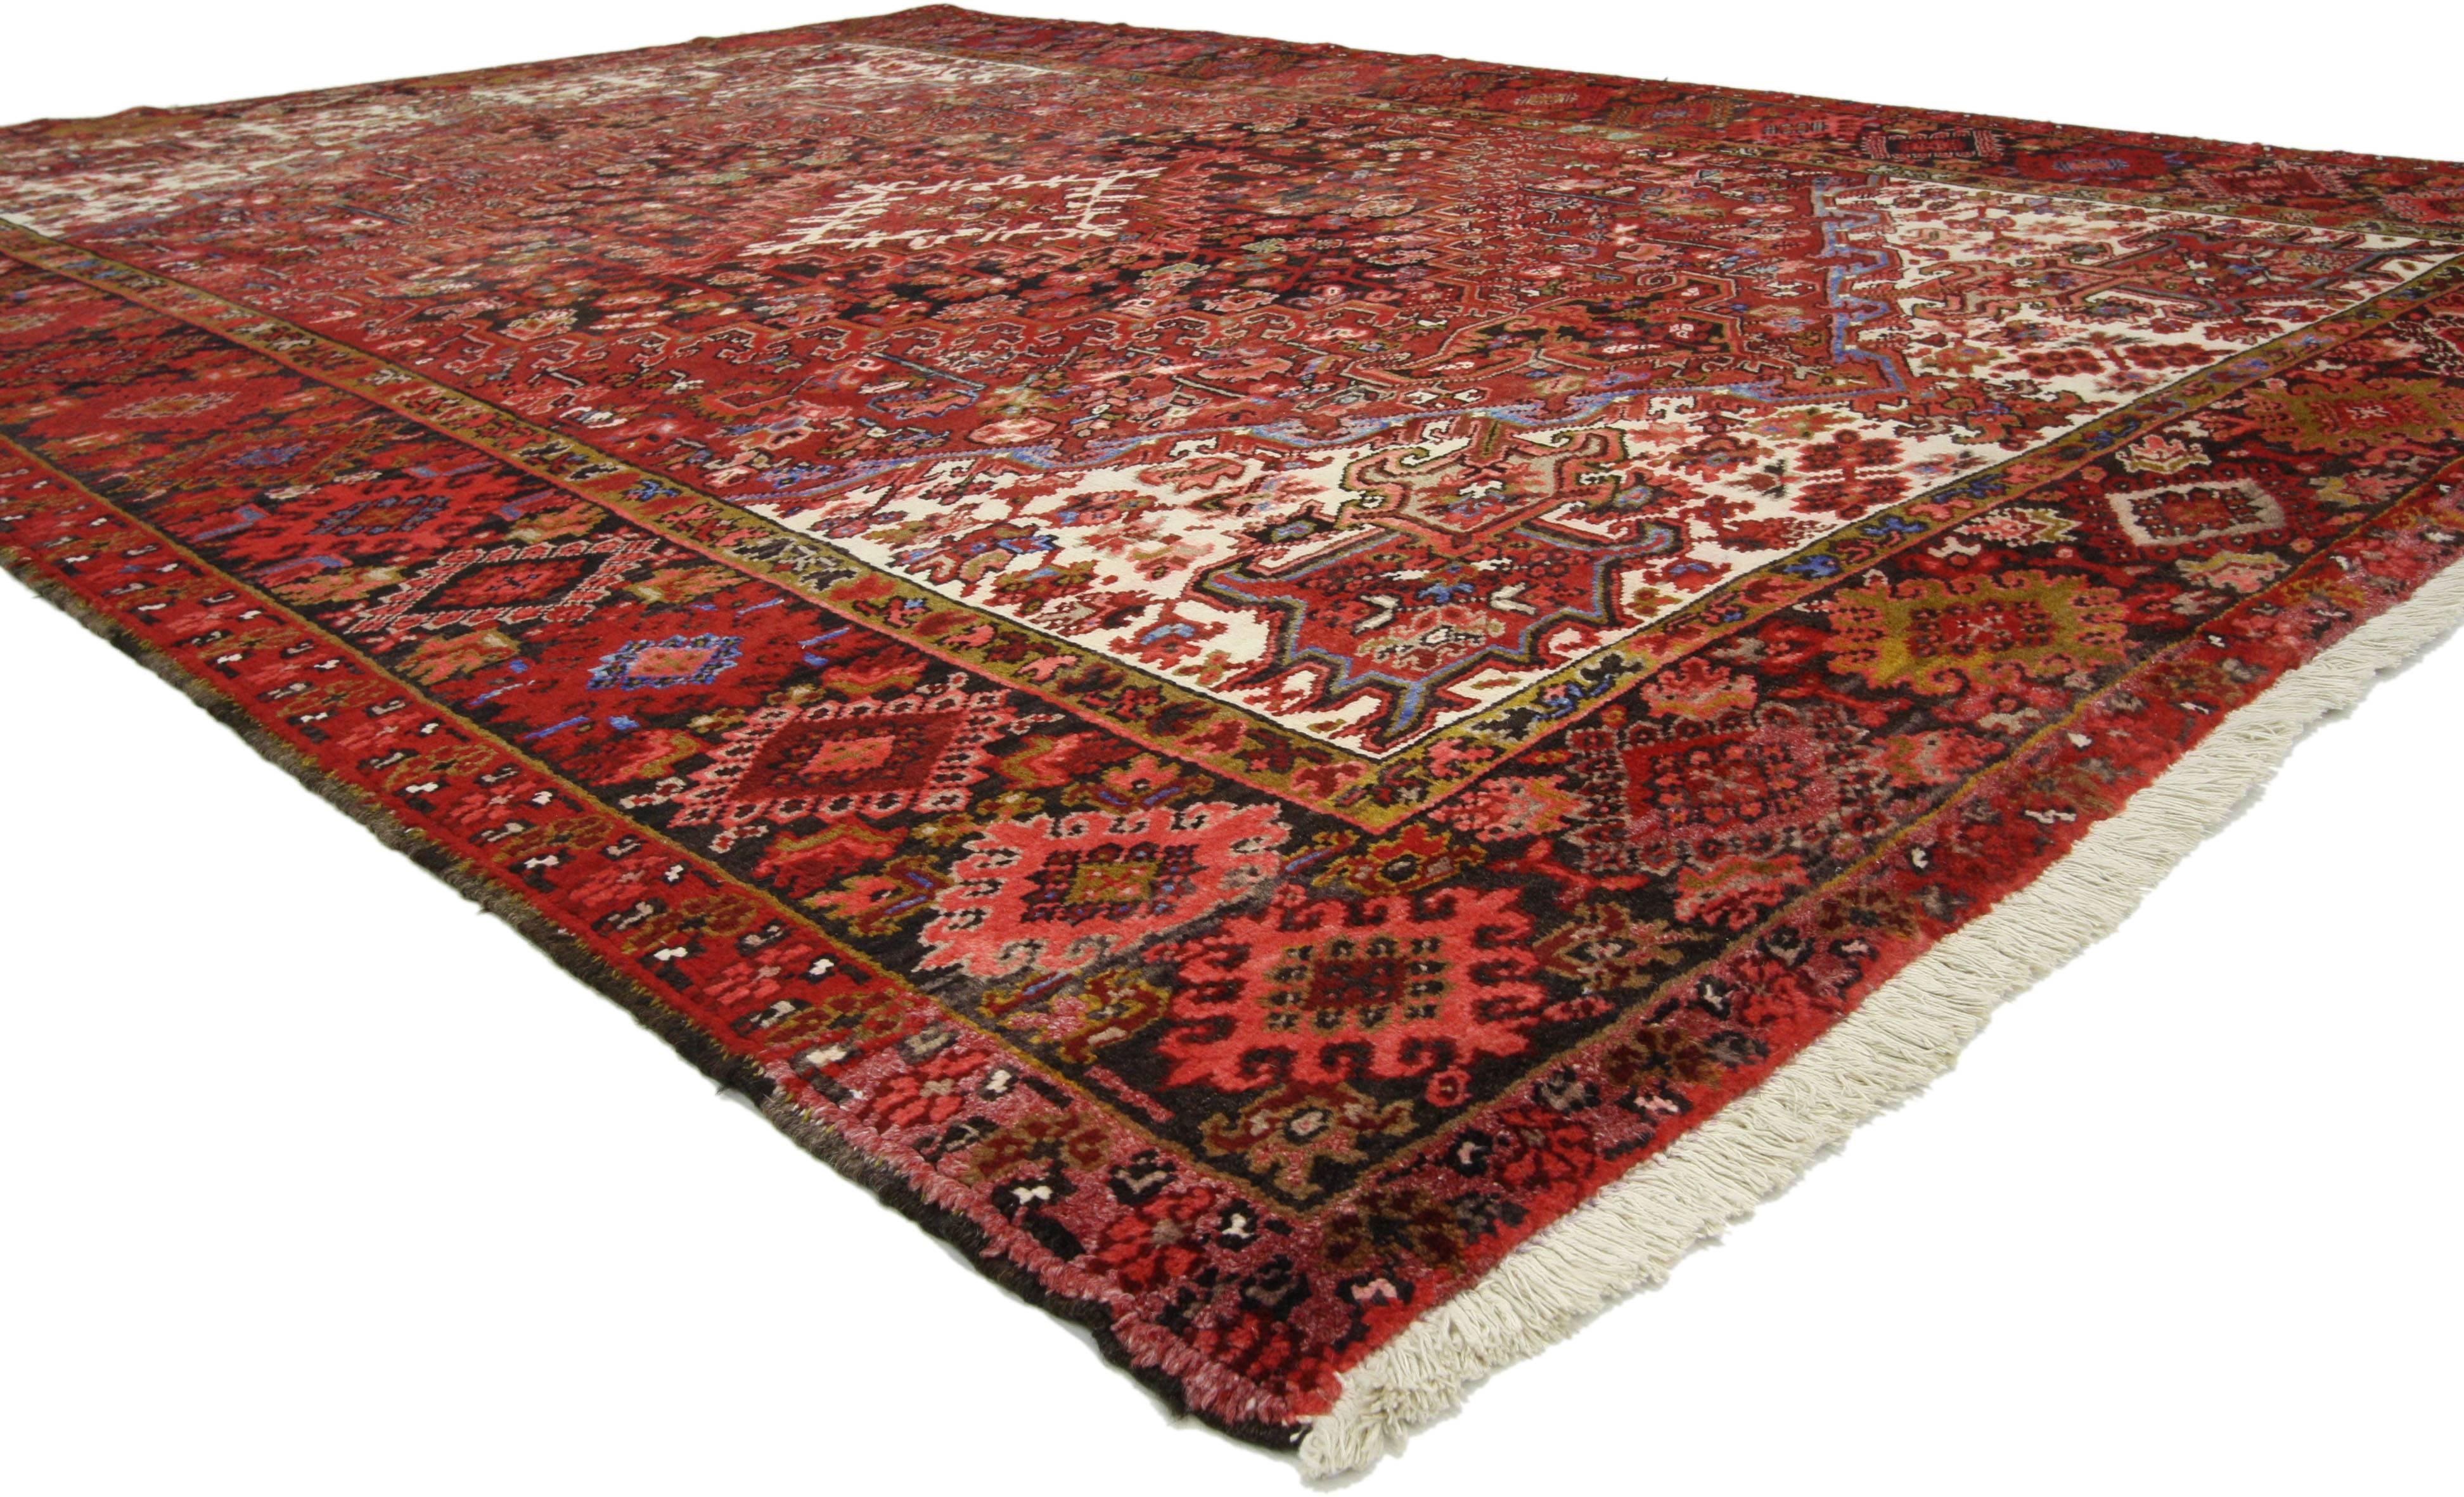 76189 Vintage Persian Heriz Teppich mit Mid-Century Modern Style 07'07 X 10'08. Mit seiner auffallenden Attraktivität und der satten roten Farbpalette wirkt dieser handgeknüpfte Teppich aus alter persischer Heriz-Wolle wie ein prächtiger